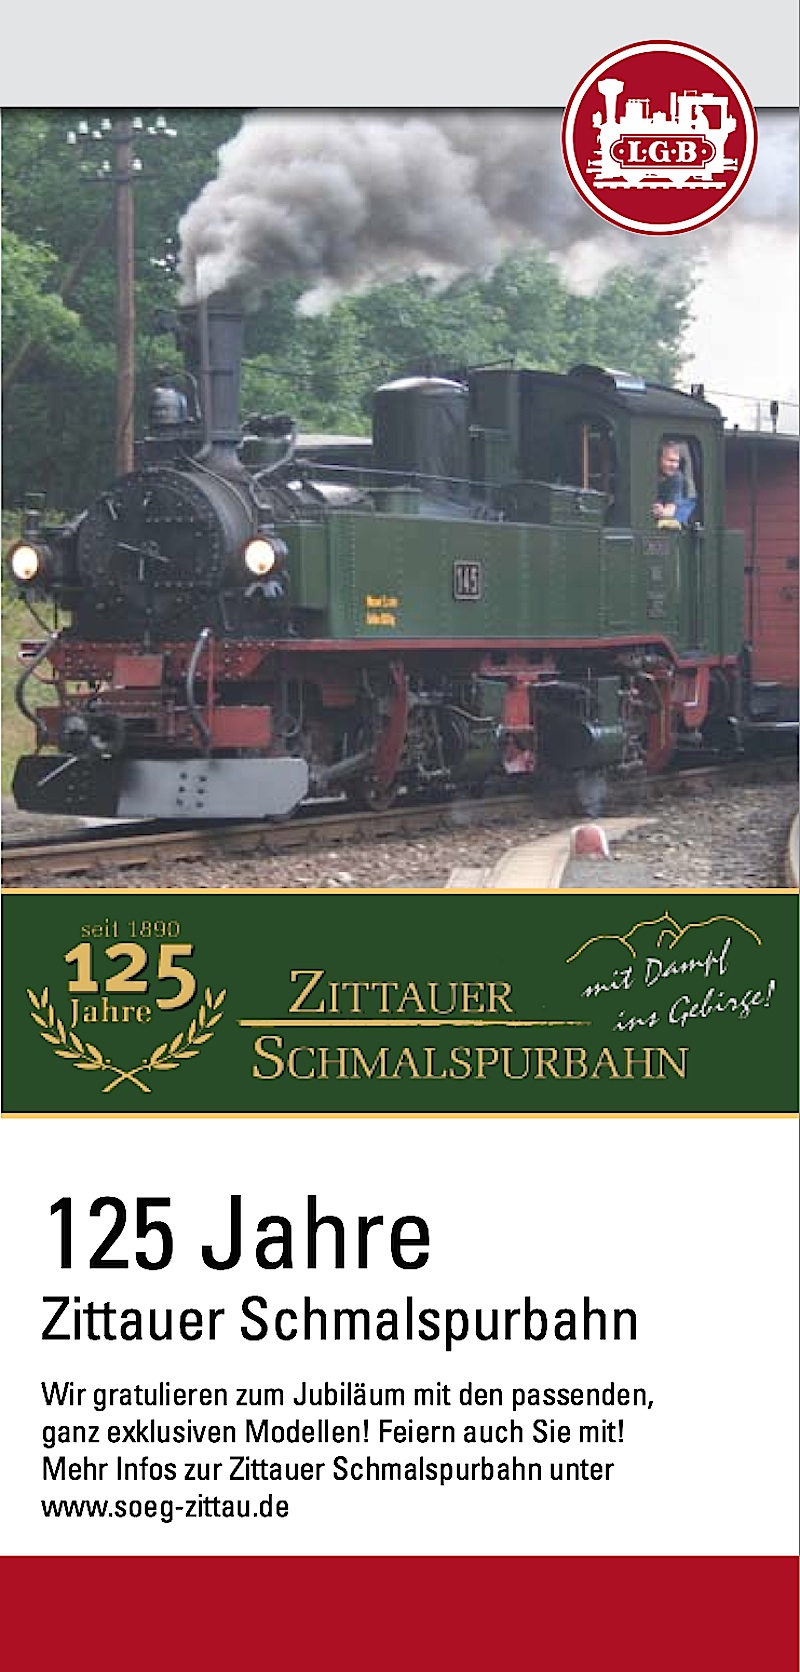 LGB Faltblatt (Flyer) - 125 Jahre Zittauer Schmalspurbahn (125th Anniversary of the Zittauer Narrow Gauge Railway)